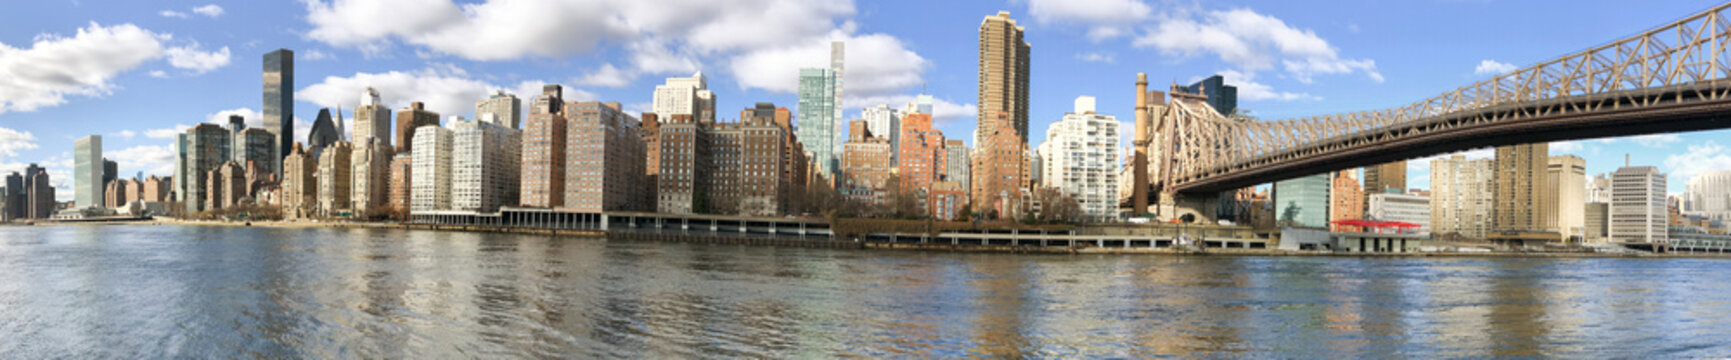  Panoramic view of Manhattan skyline from Roosevelt Island, New York City